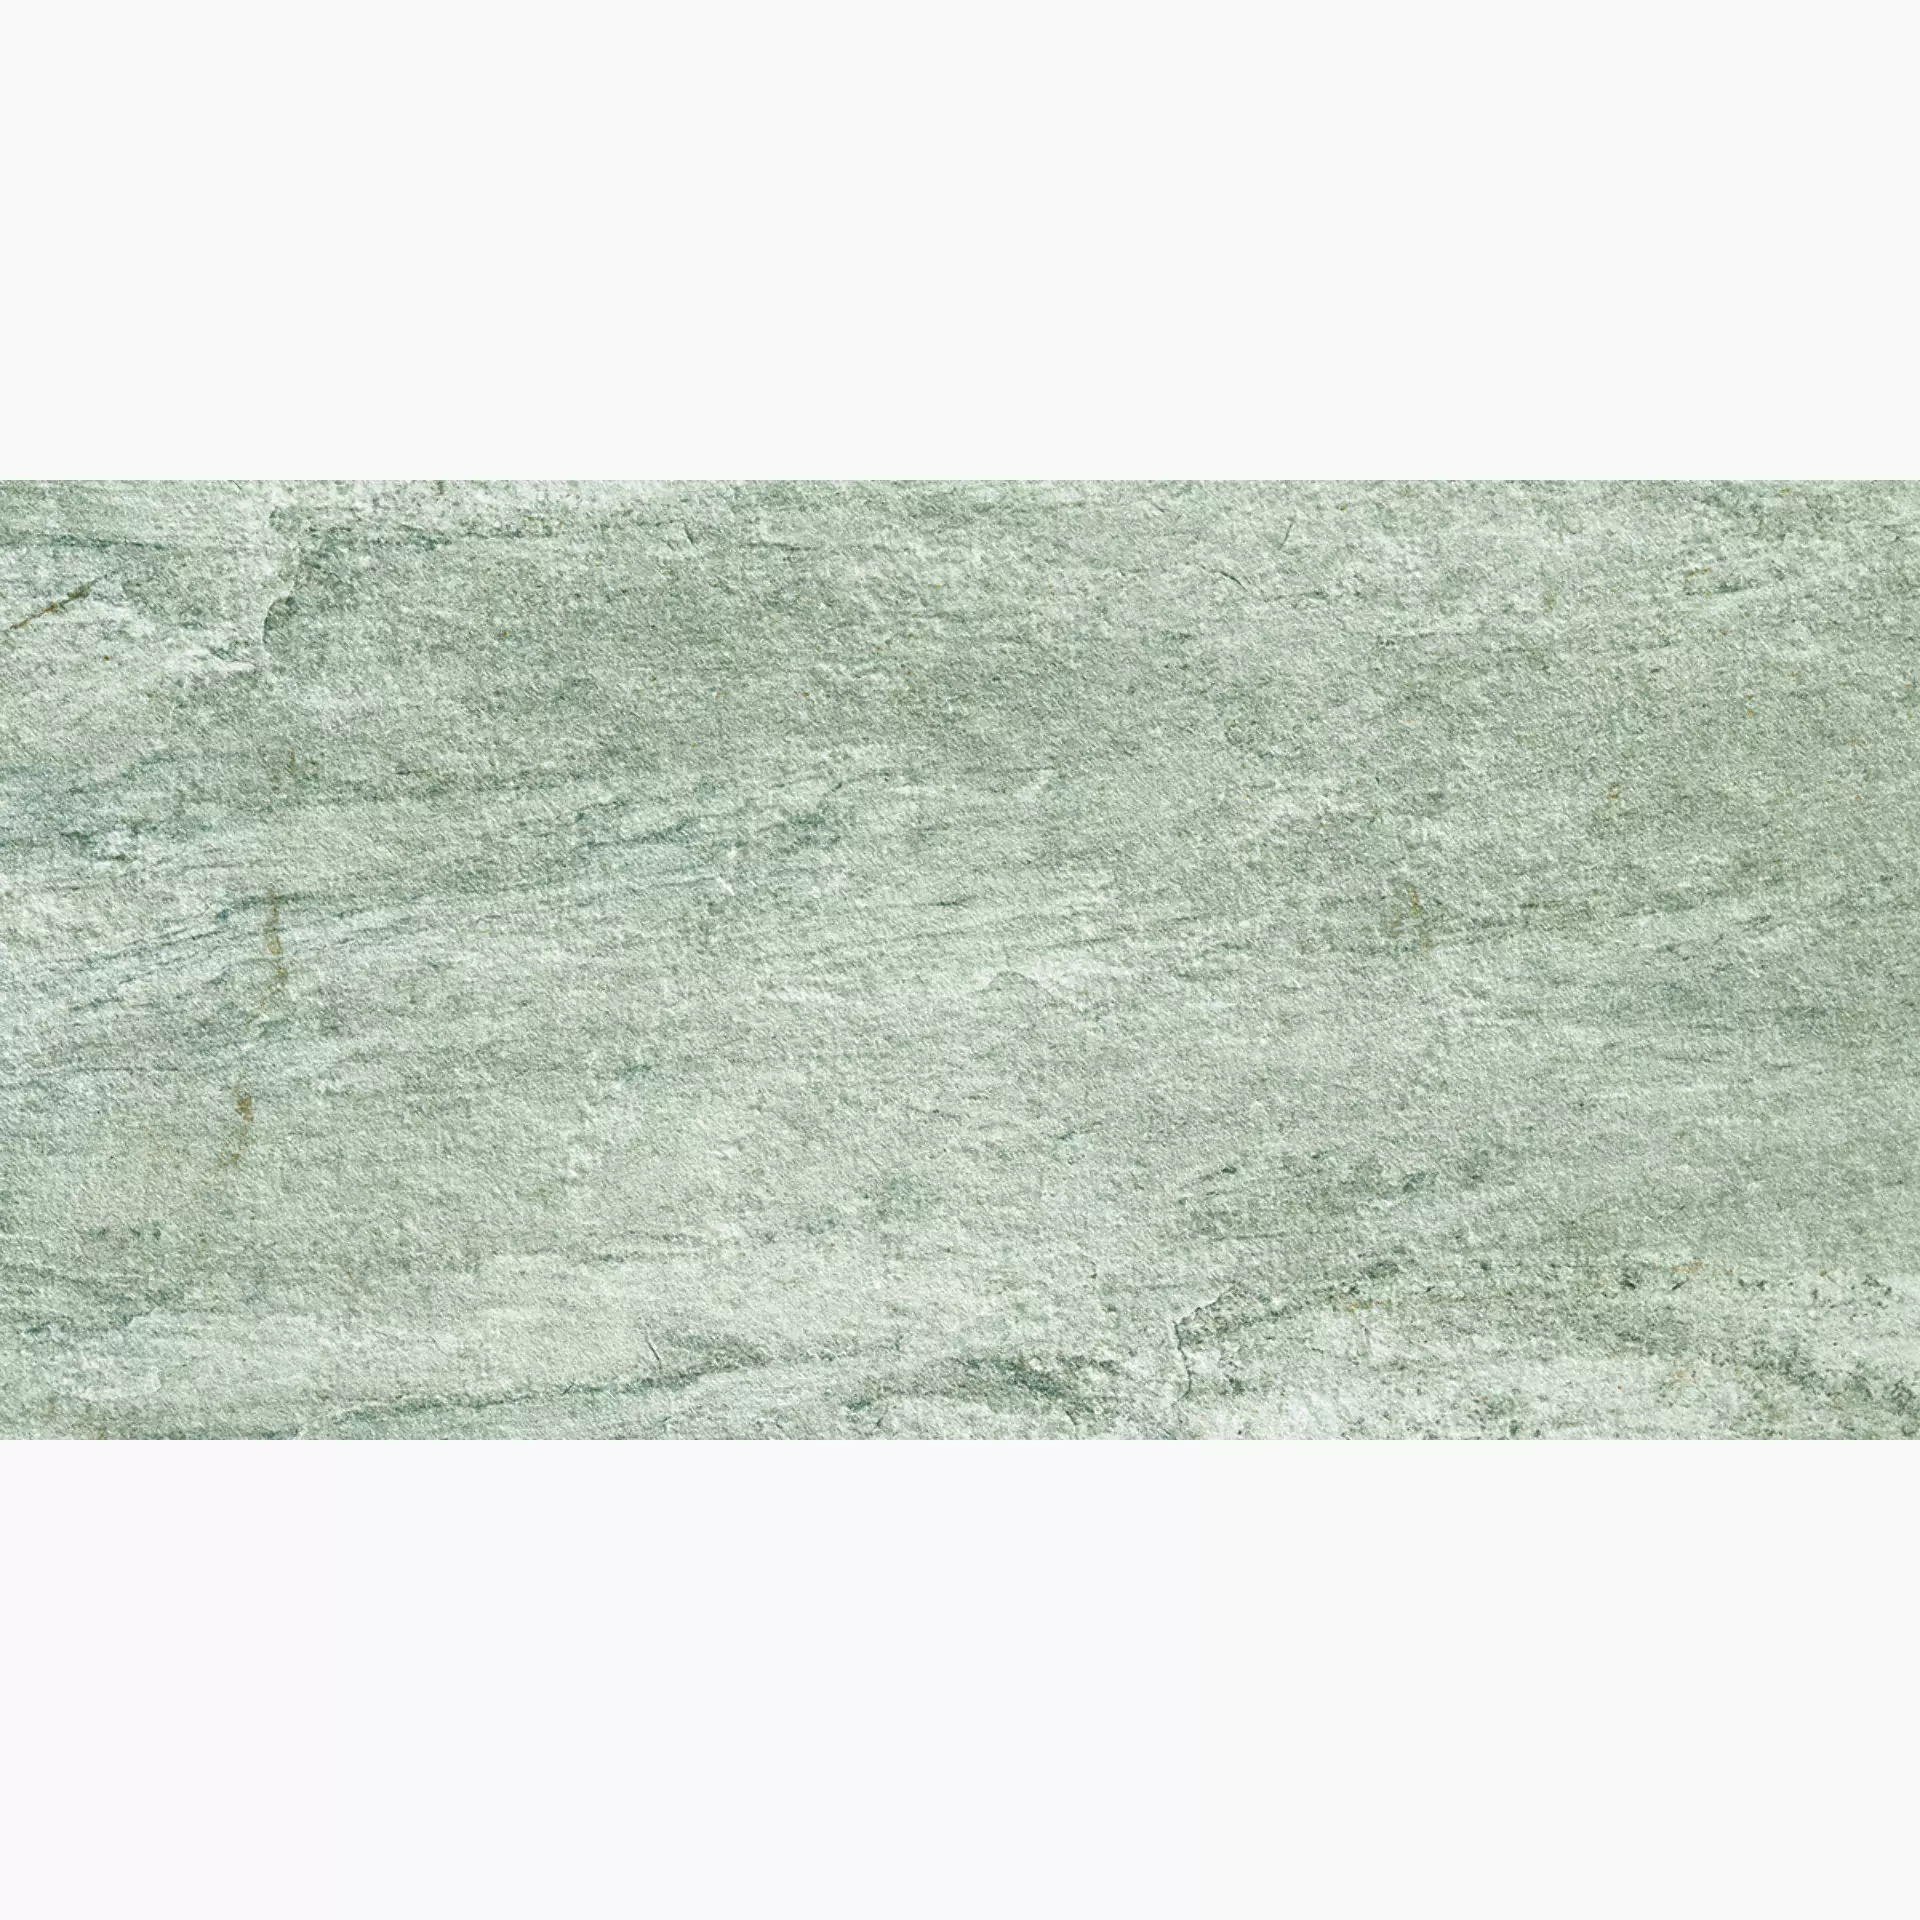 Alfalux Stone Quartz Perla Grip 7331916 60x120cm rectified 20mm